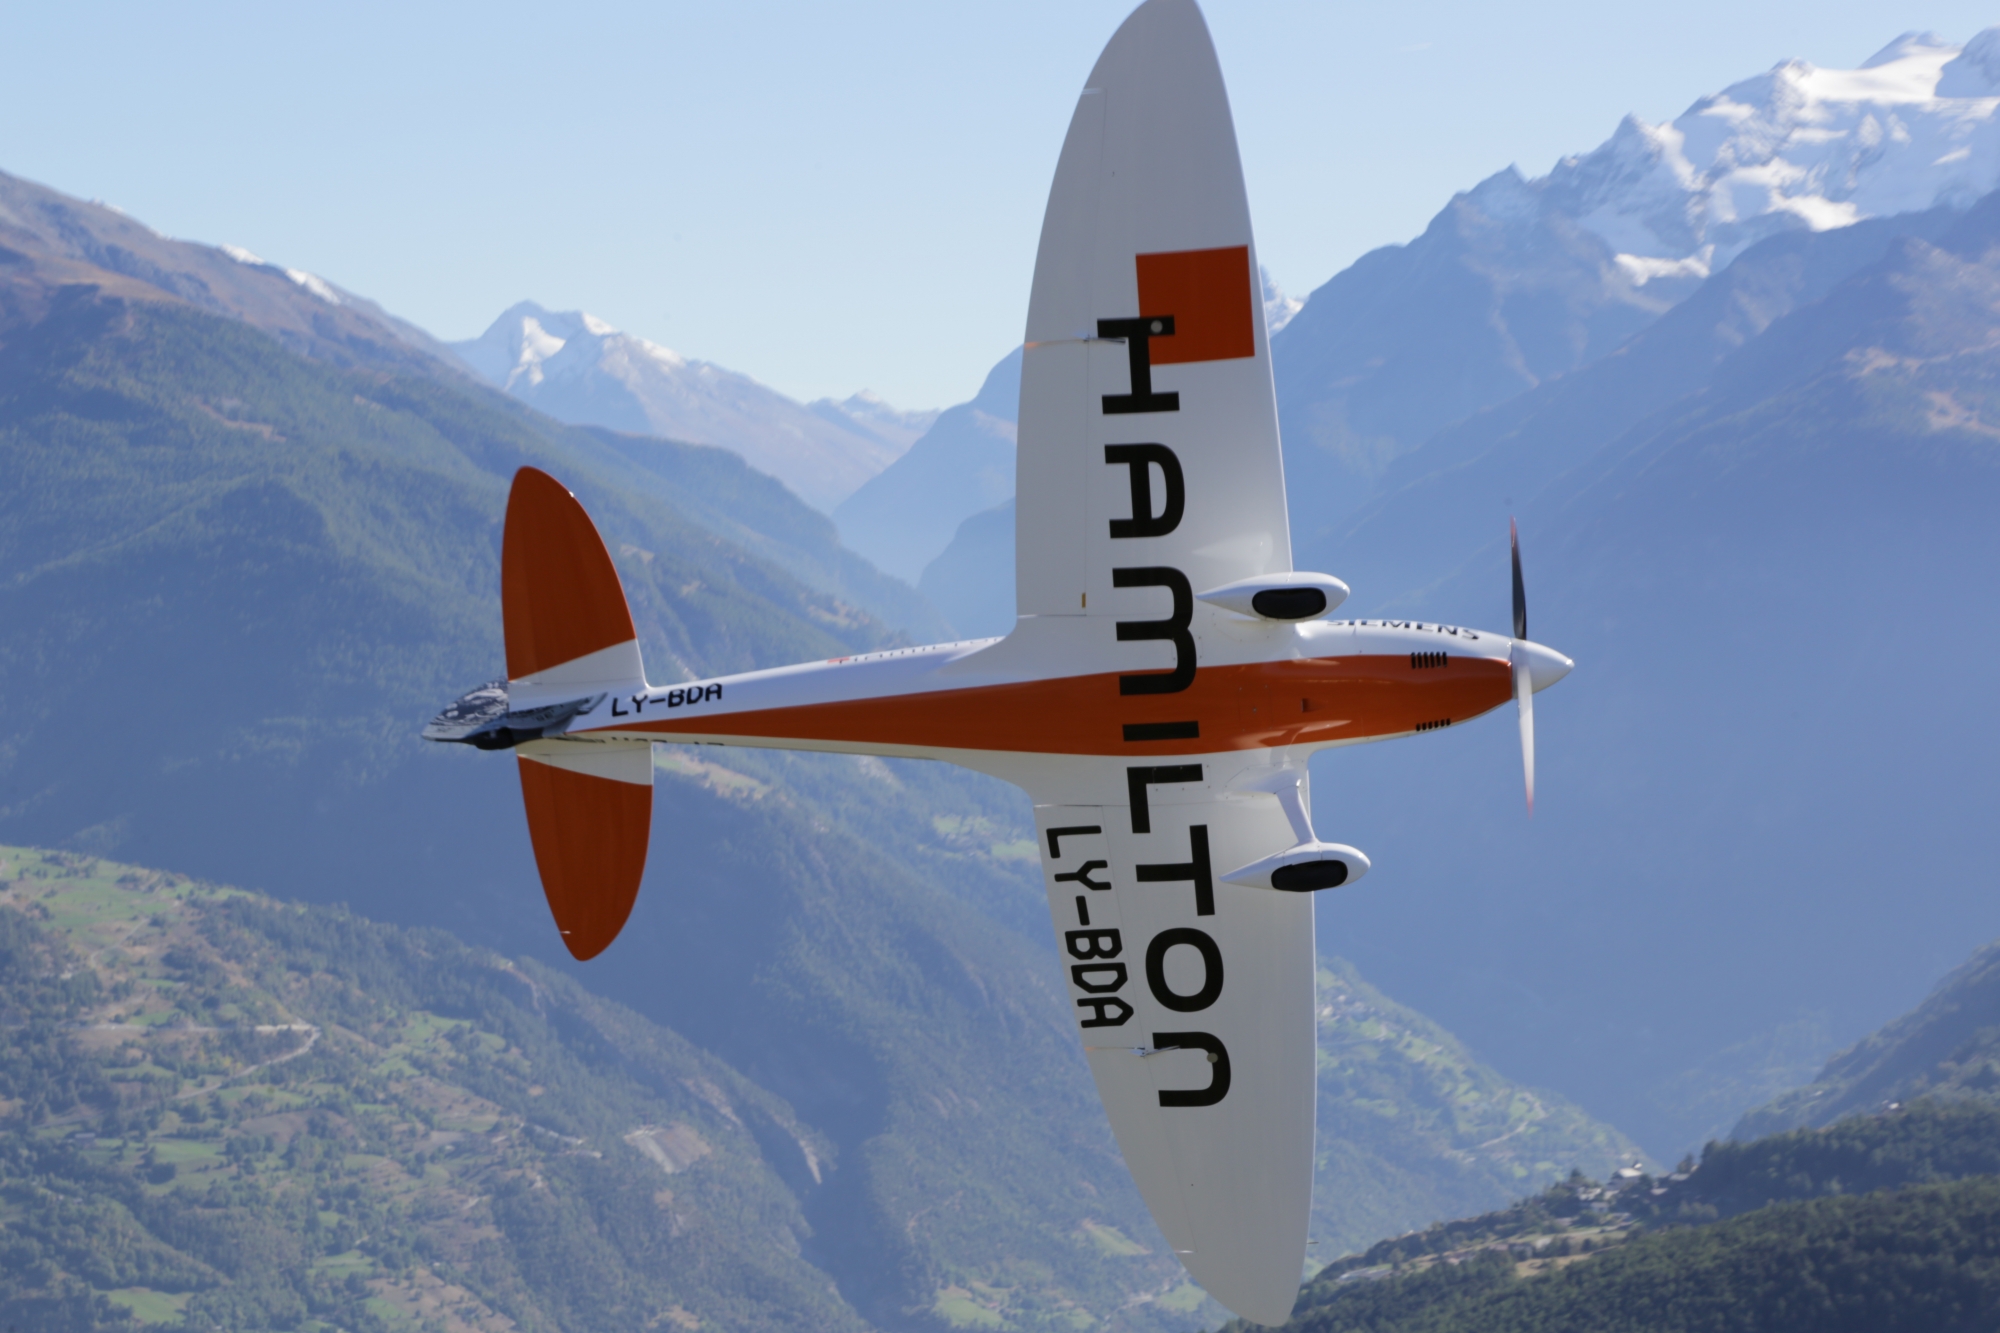 La société H55, issue de l'aventure Solar Impulse, s'installe à Sion. Elle va développer les avions électriques de demain, elle qui a déjà participé à la conception du premier avion acro électrique.